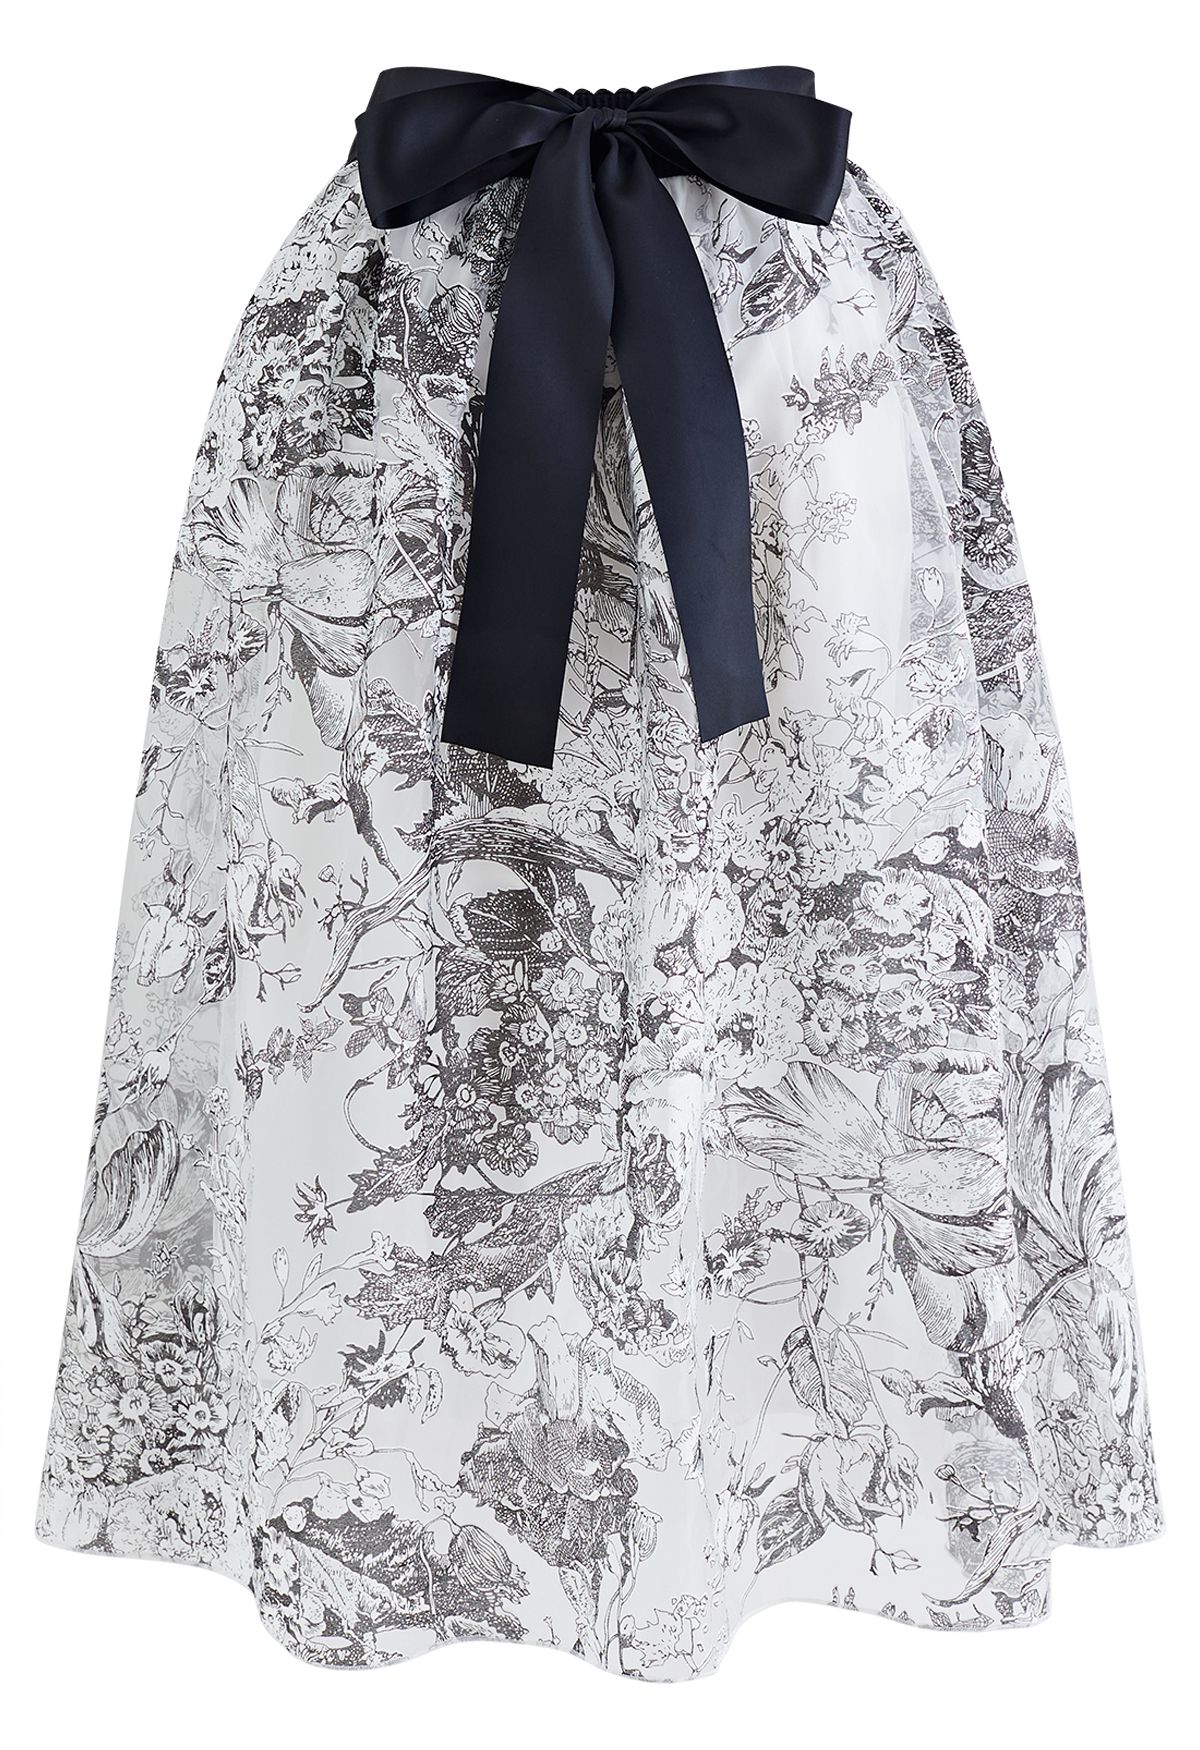 Floral Sketch Bowknot Waist Organza Skirt